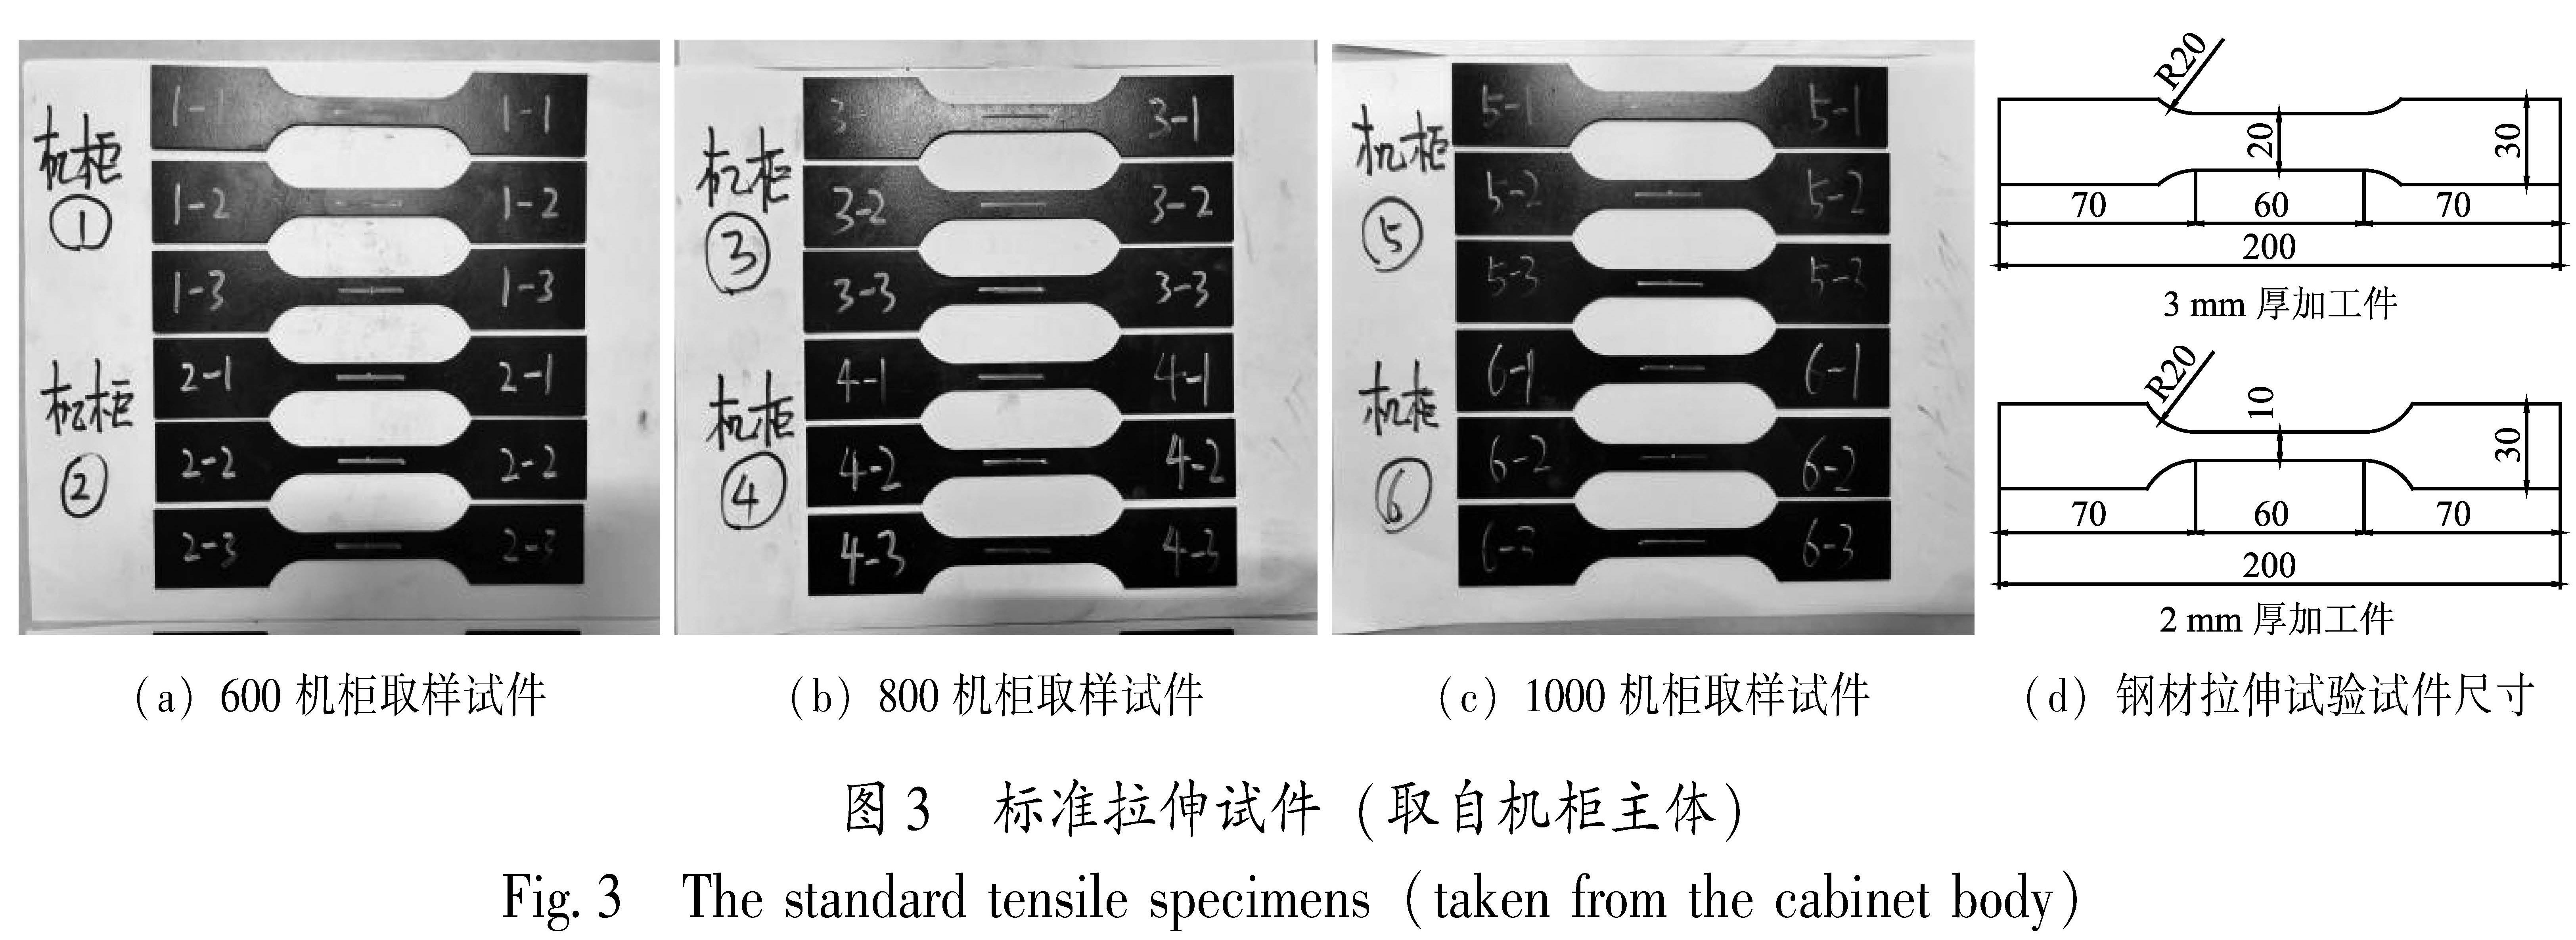 图3 标准拉伸试件(取自机柜主体)<br/>Fig.3 The standard tensile specimens(taken from the cabinet body)